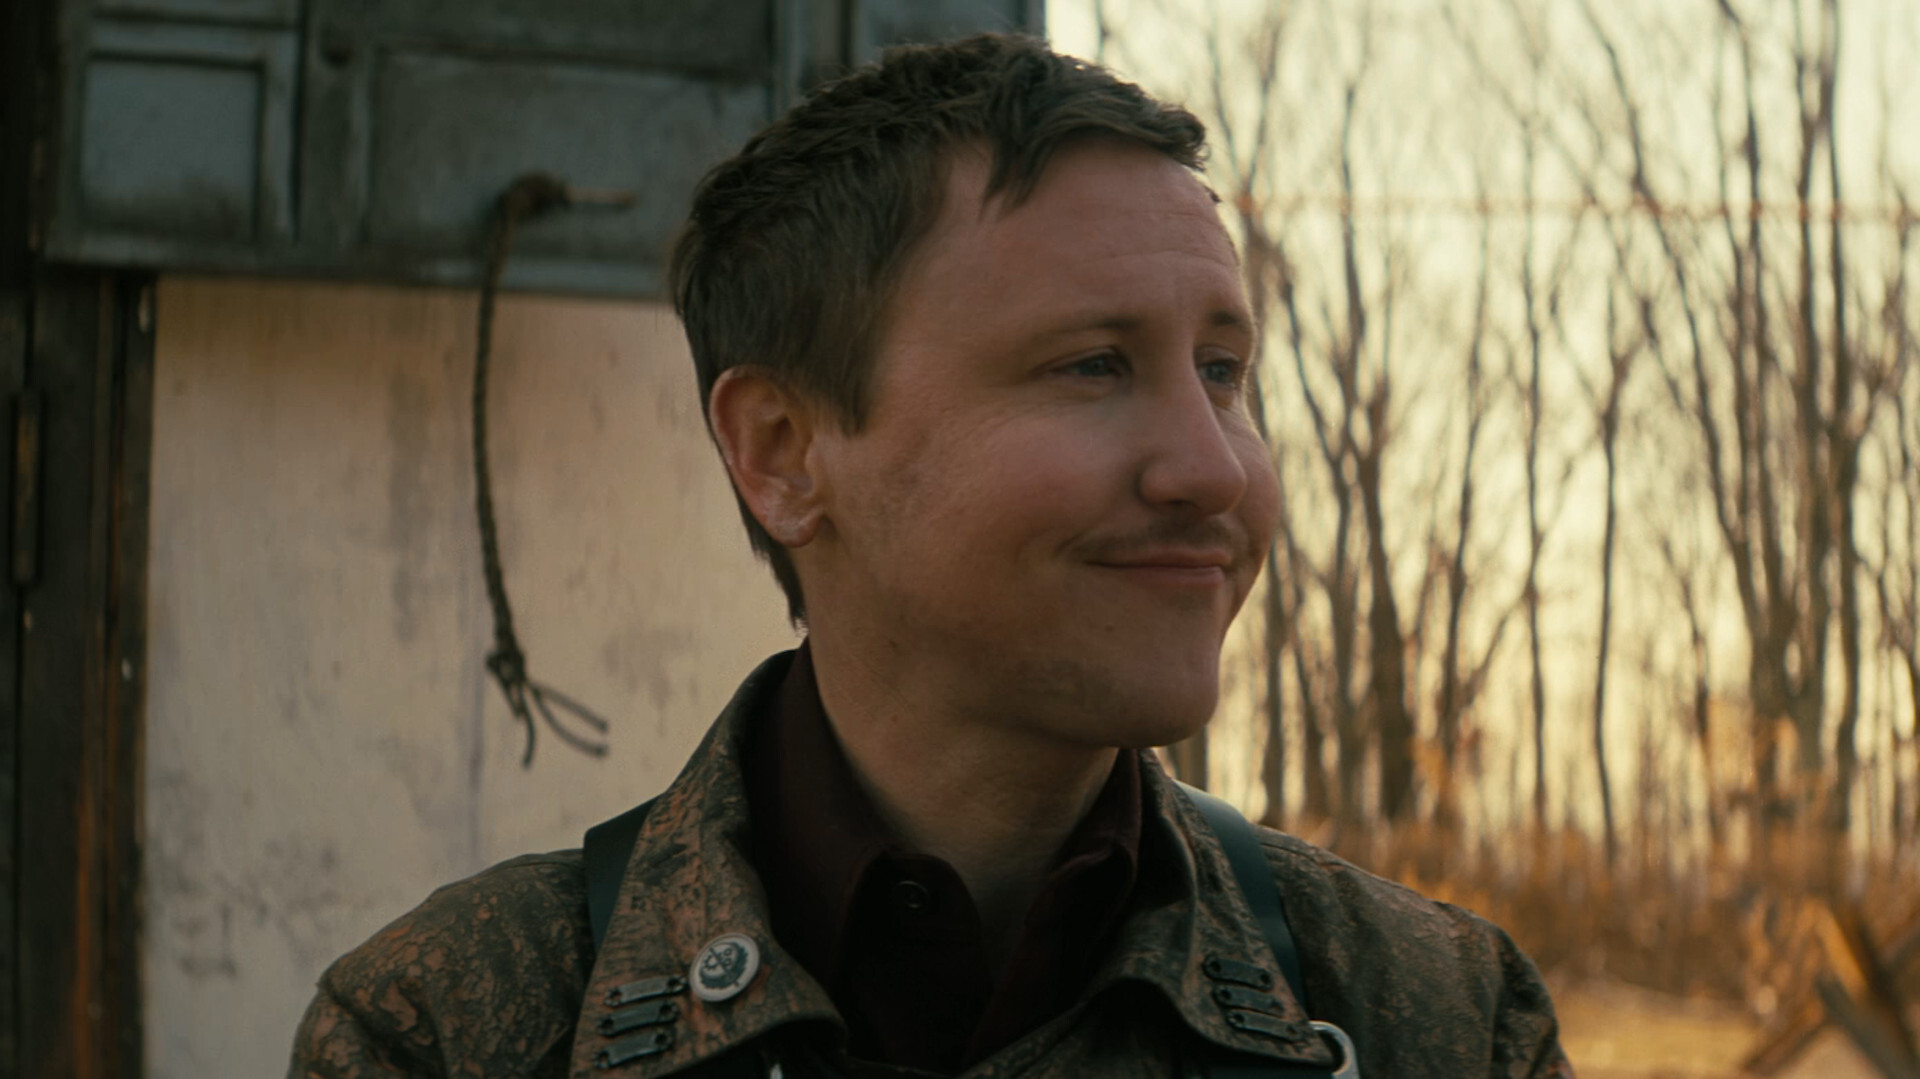 Serie de televisión Fallout: el escudero Thaddeus luce una sonrisa tonta en el páramo